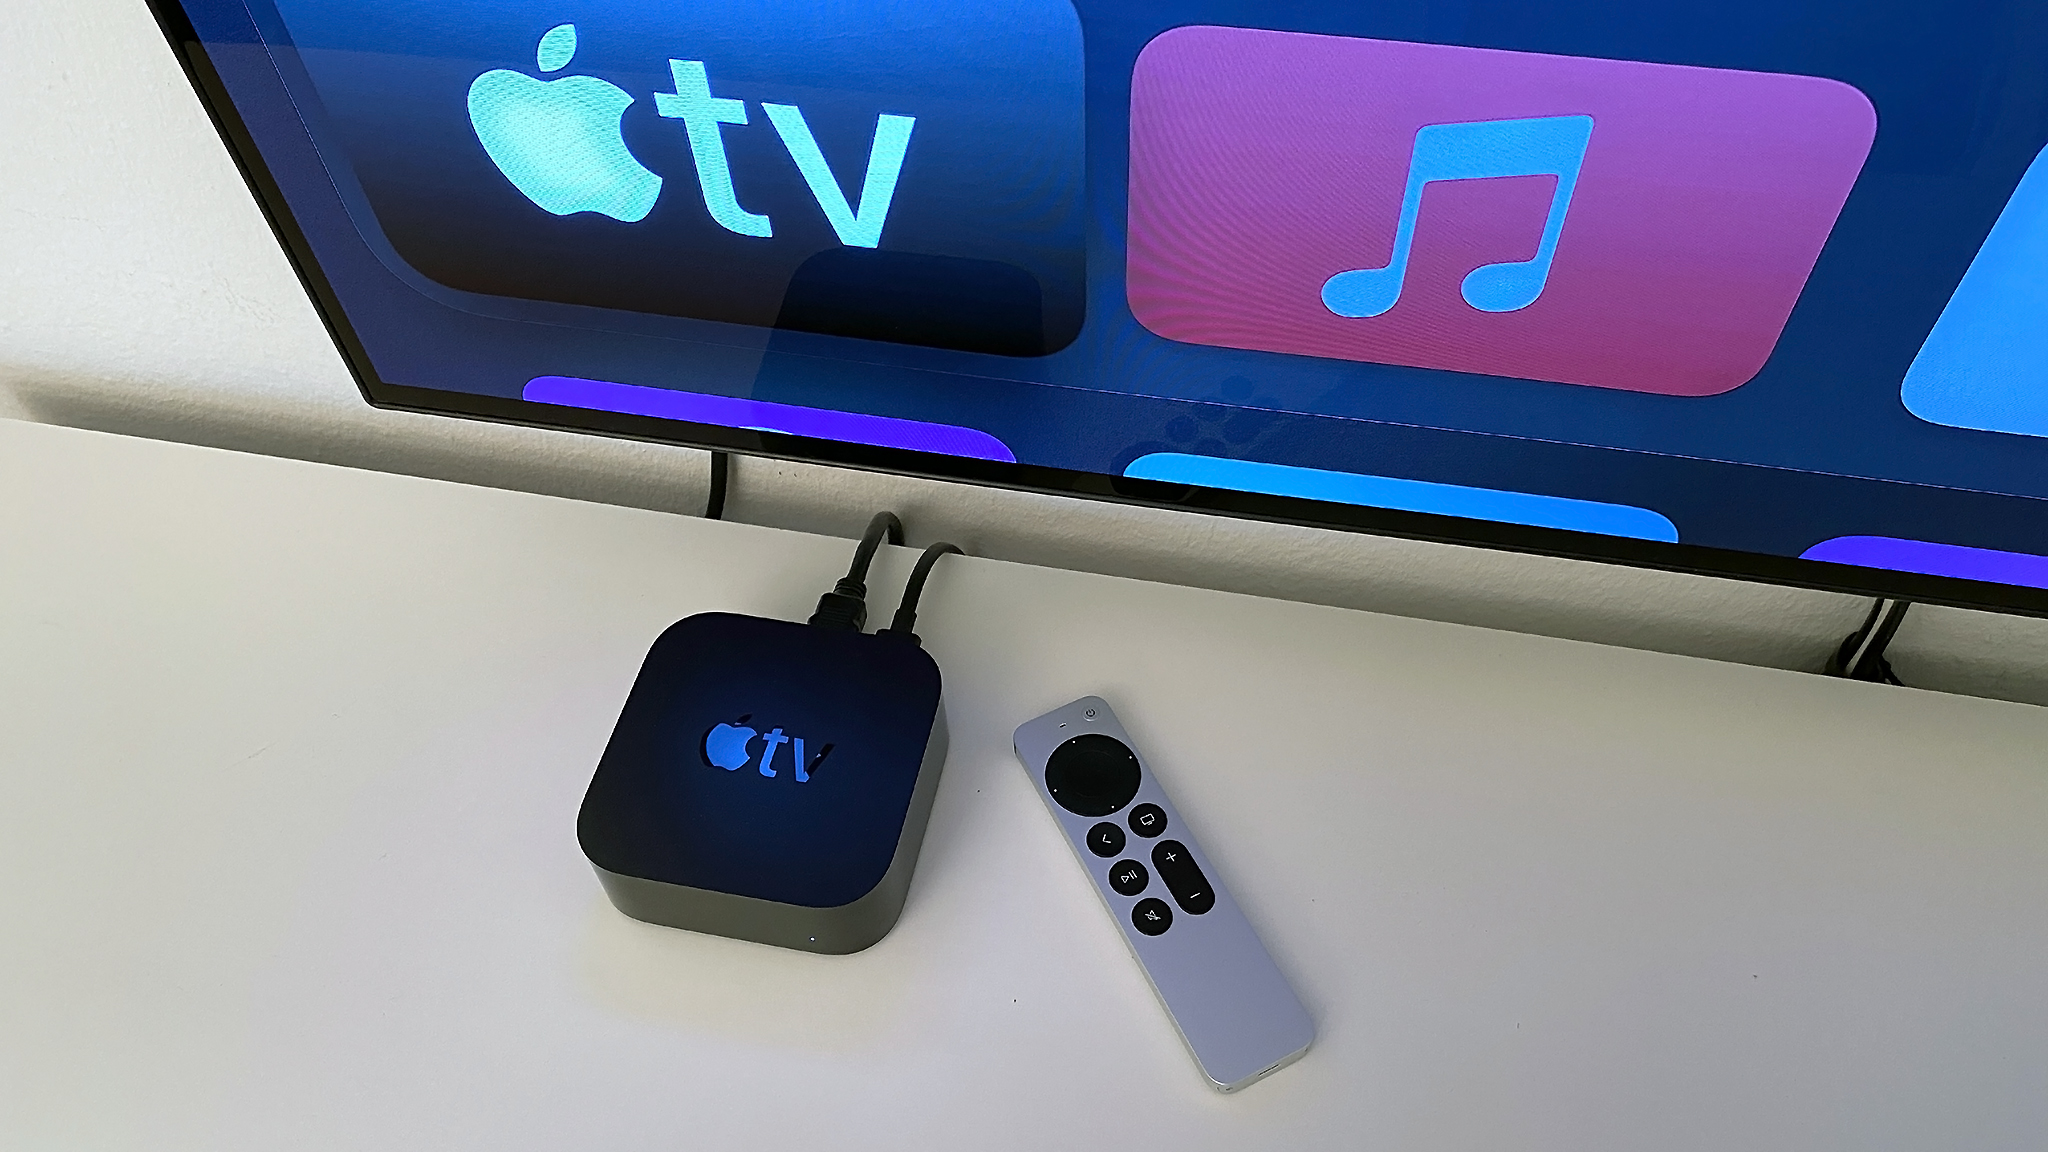 Neues Apple TV 4K HDR (2021) im Test: Lohnt es sich? - COMPUTER BILD